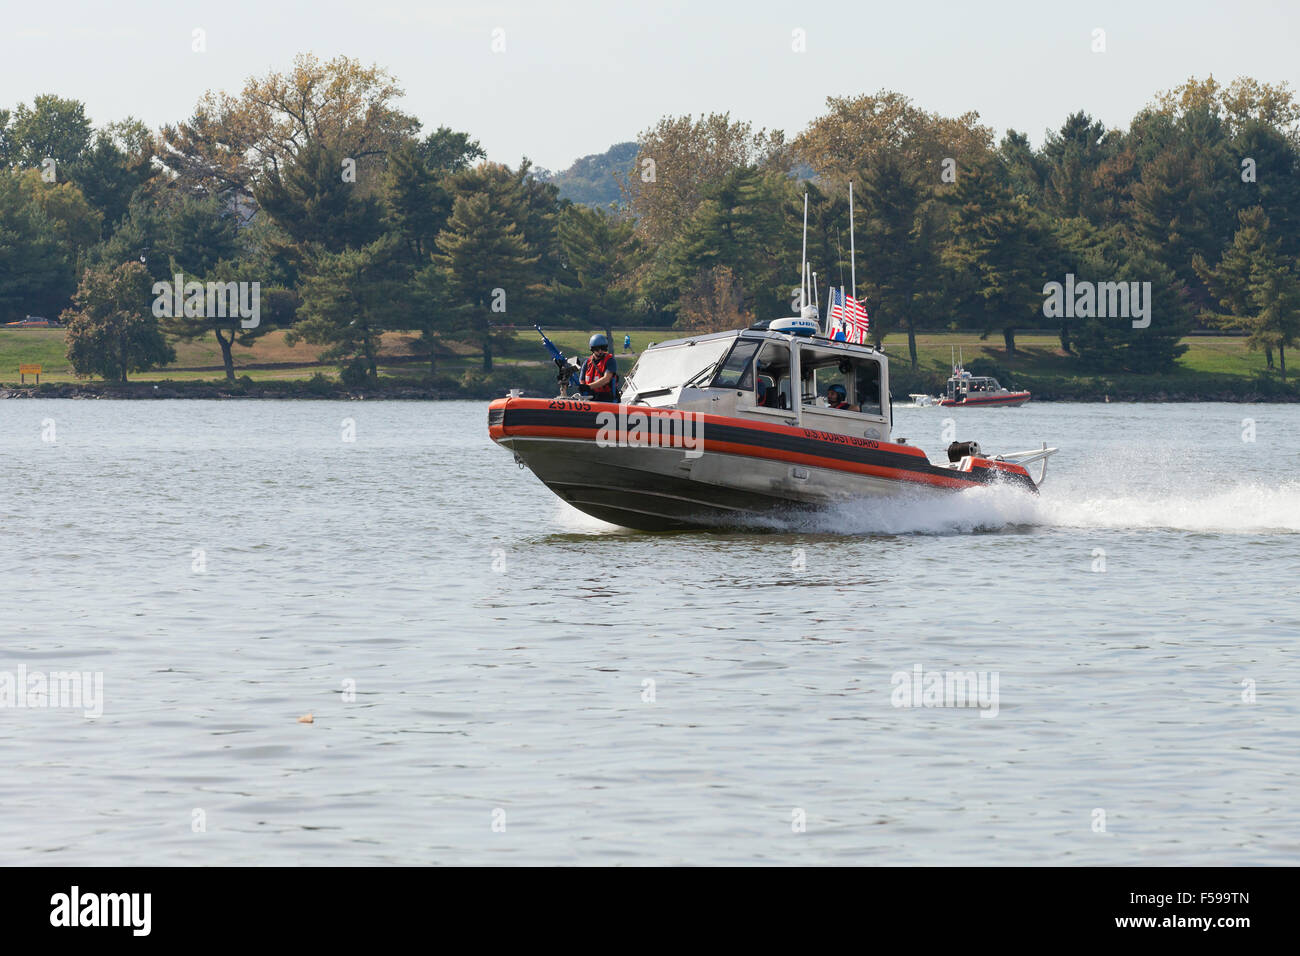 US Coast Guard metallo alluminio Shark barca sul fiume Potomac - Washington DC, Stati Uniti d'America Foto Stock